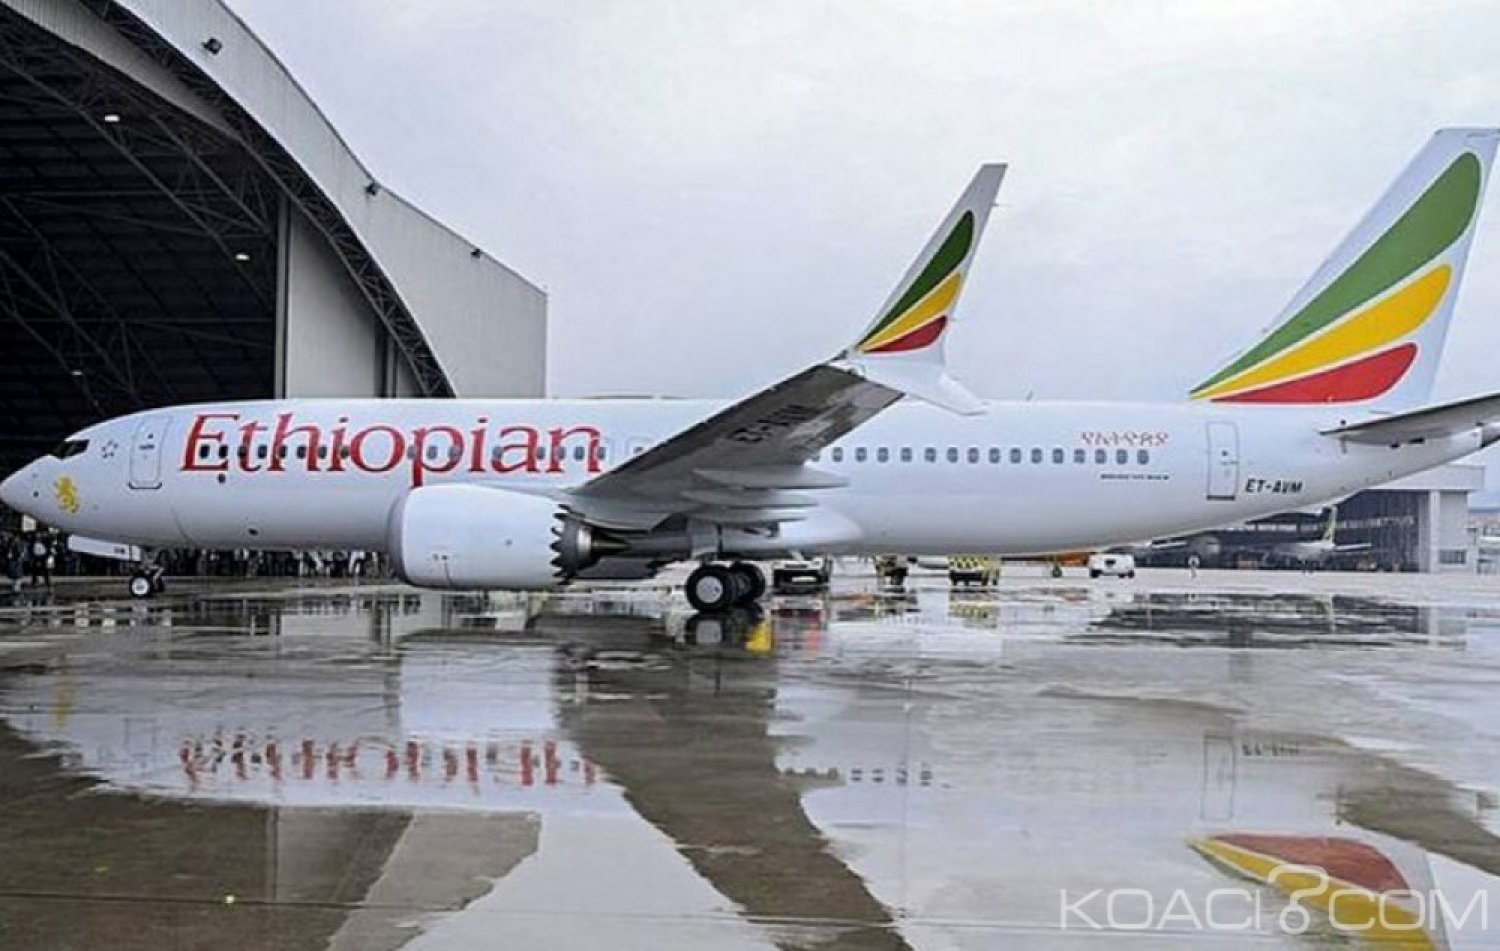 Ethiopie : Boeing  737 Max, les pilotes ont bien respecté les procédures d'urgence sans succès, selon un rapport préliminaire